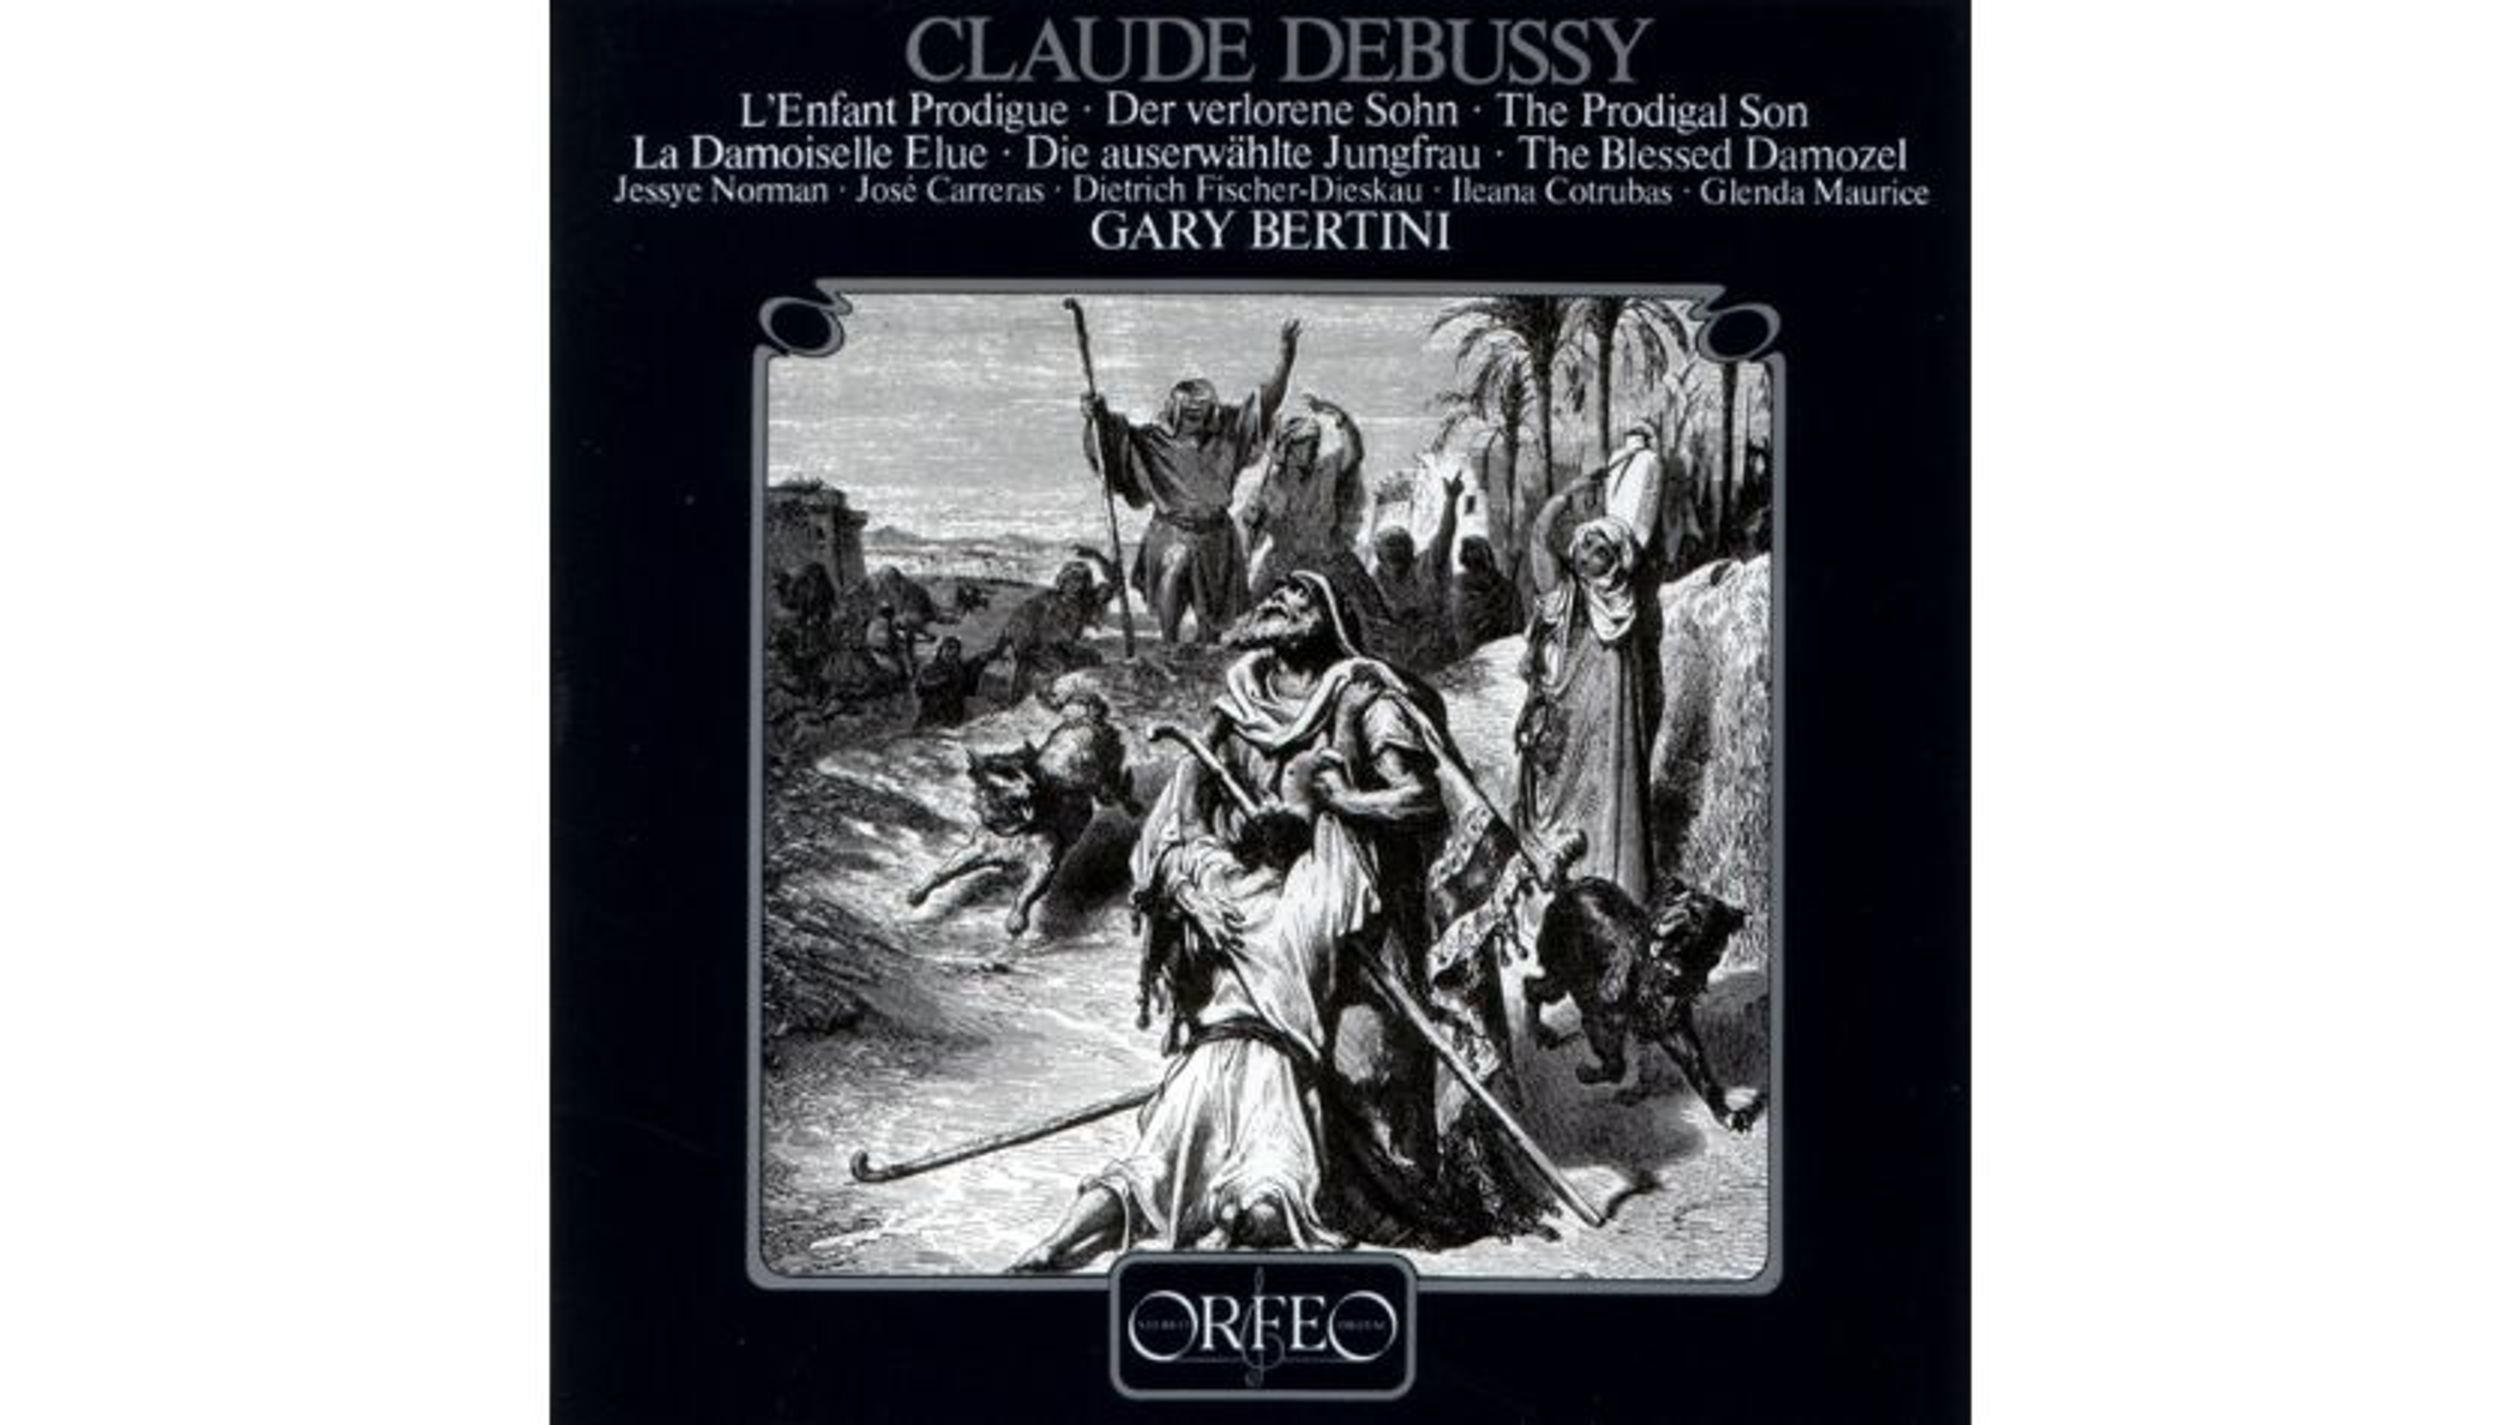 L’enfant prodigue van Claude Debussy (1884)